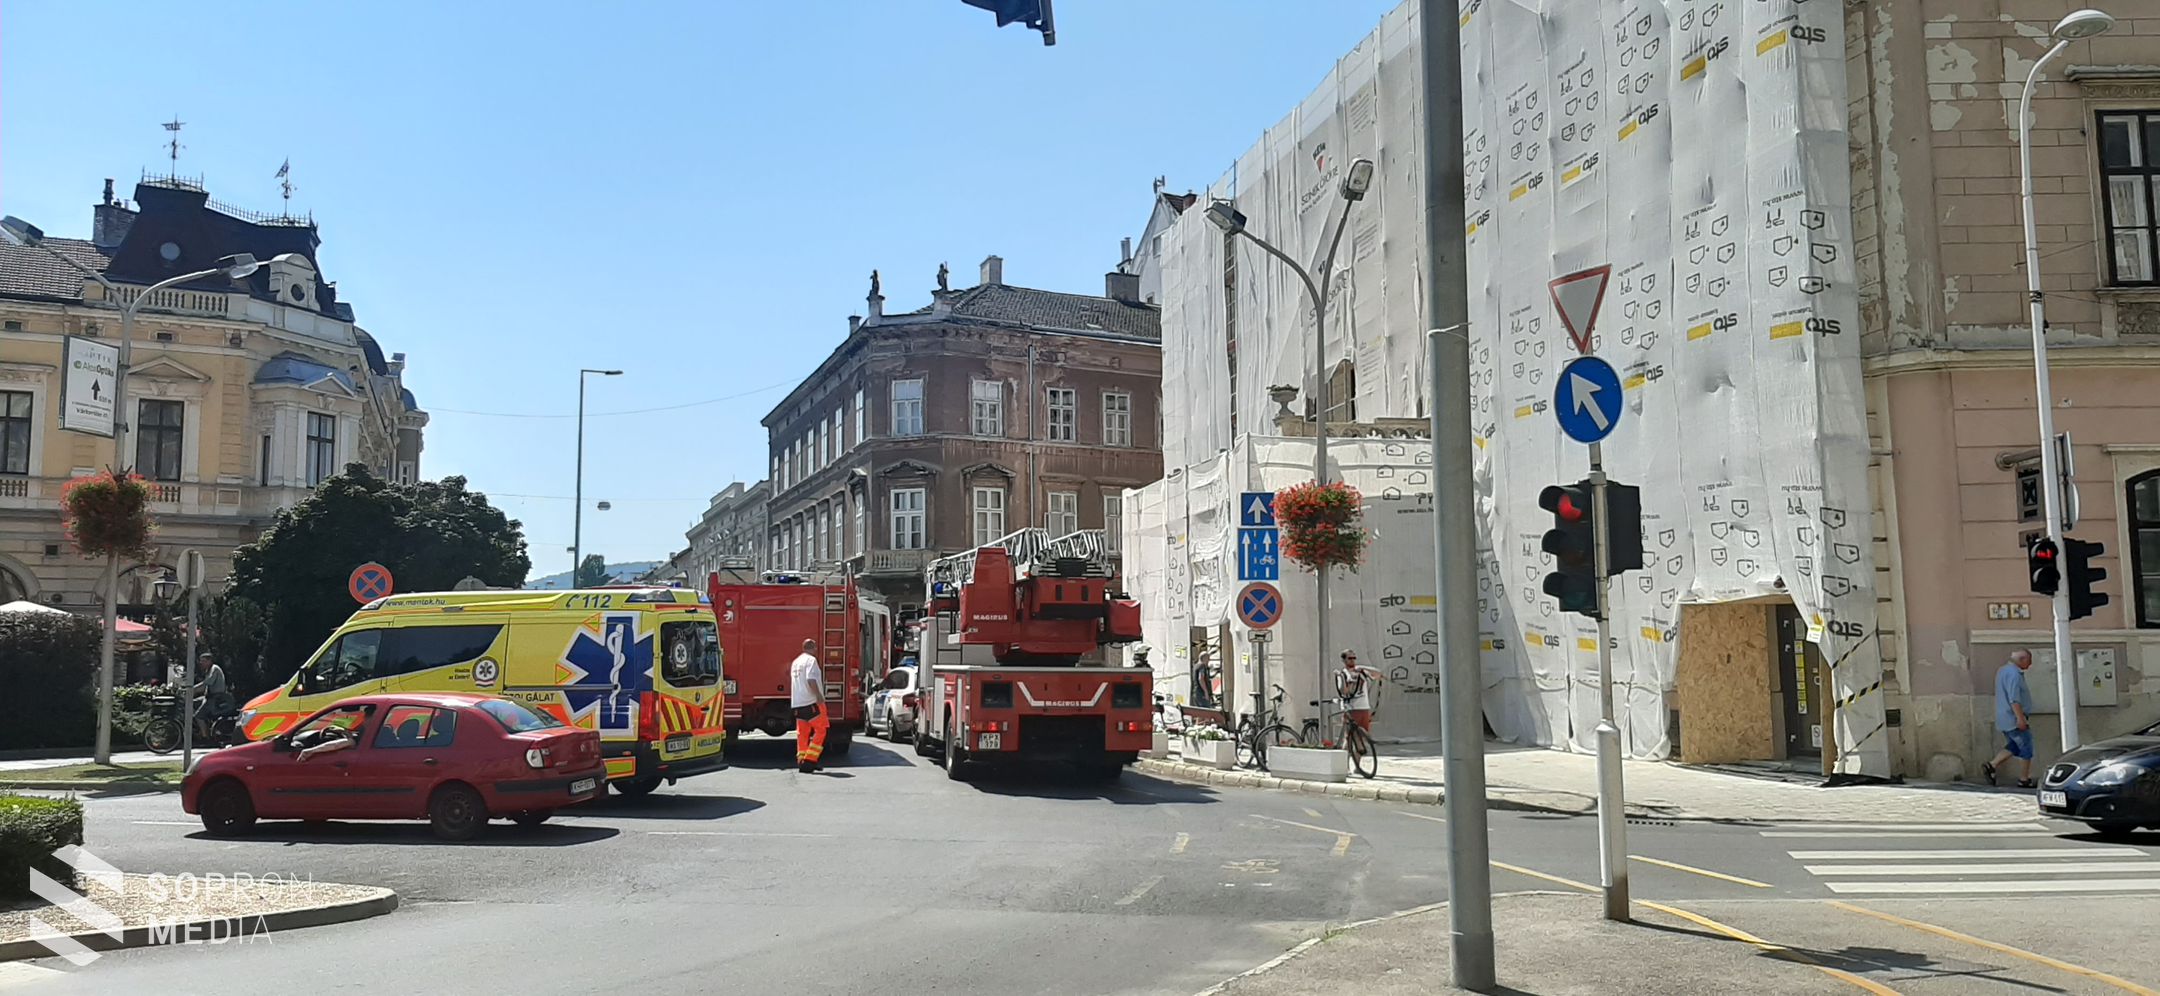 FRISSÍTETT! Tűzhelyen felejtett étel miatt vonultak ki nagy erőkkel a soproni tűzoltók